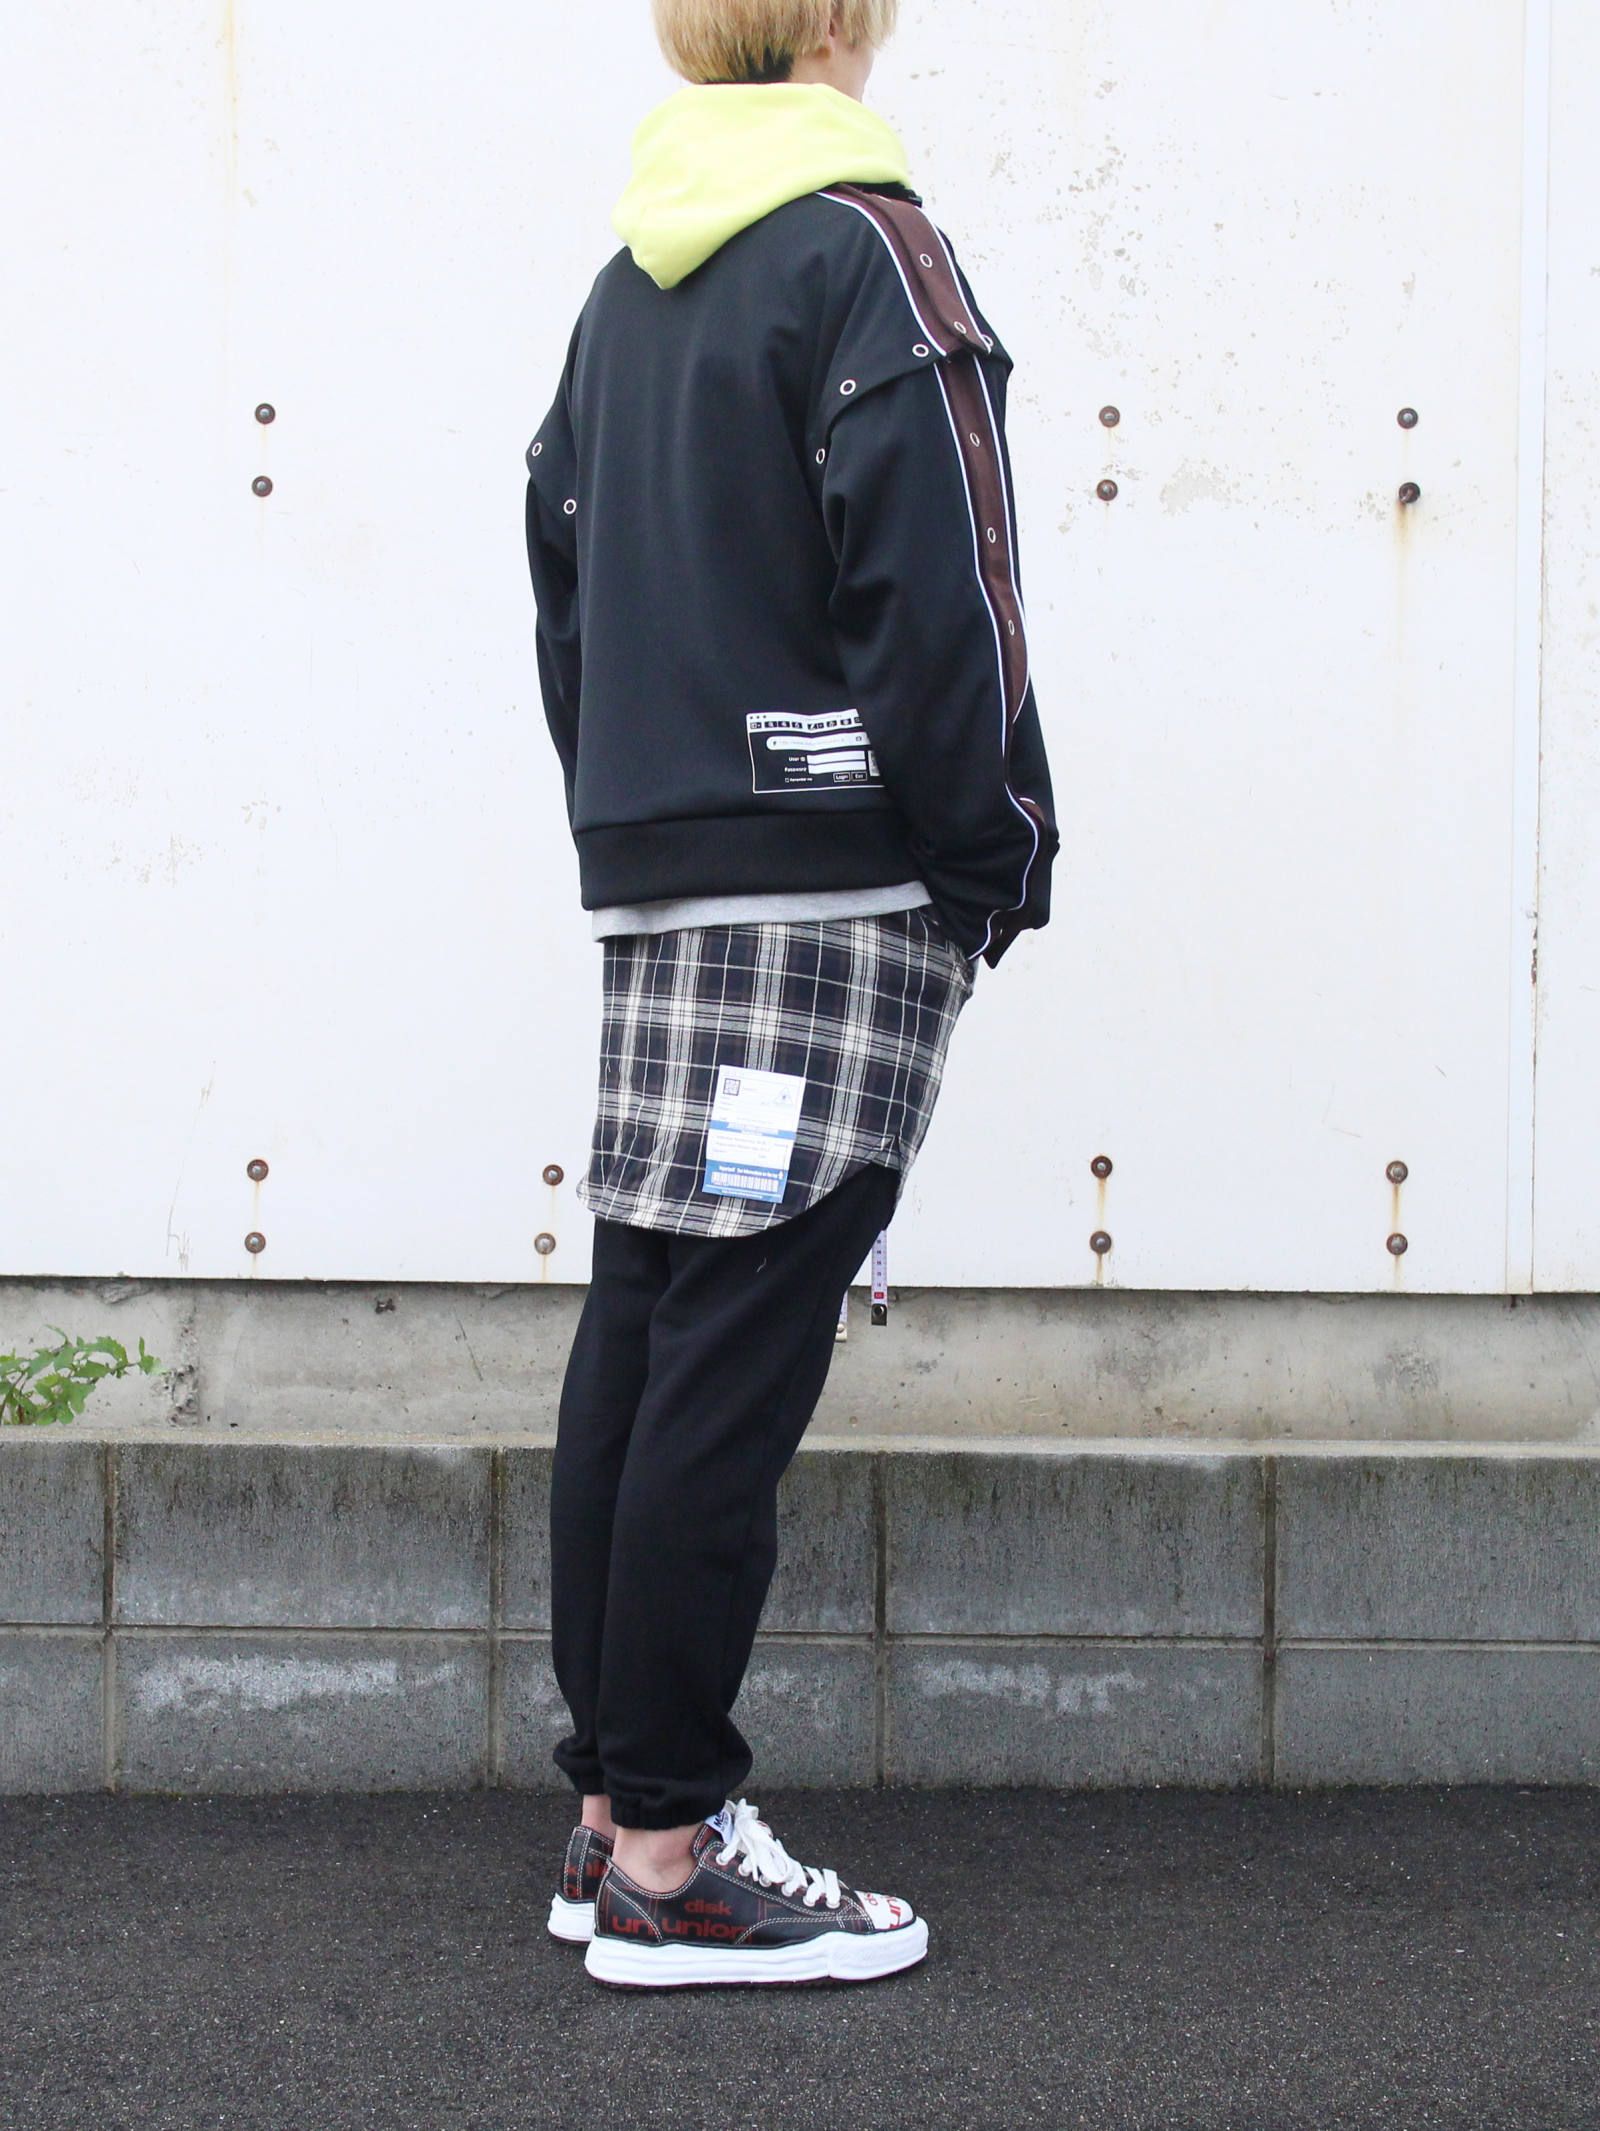 Maison MIHARA YASUHIRO - removable track jacket | ADDICT WEB SHOP